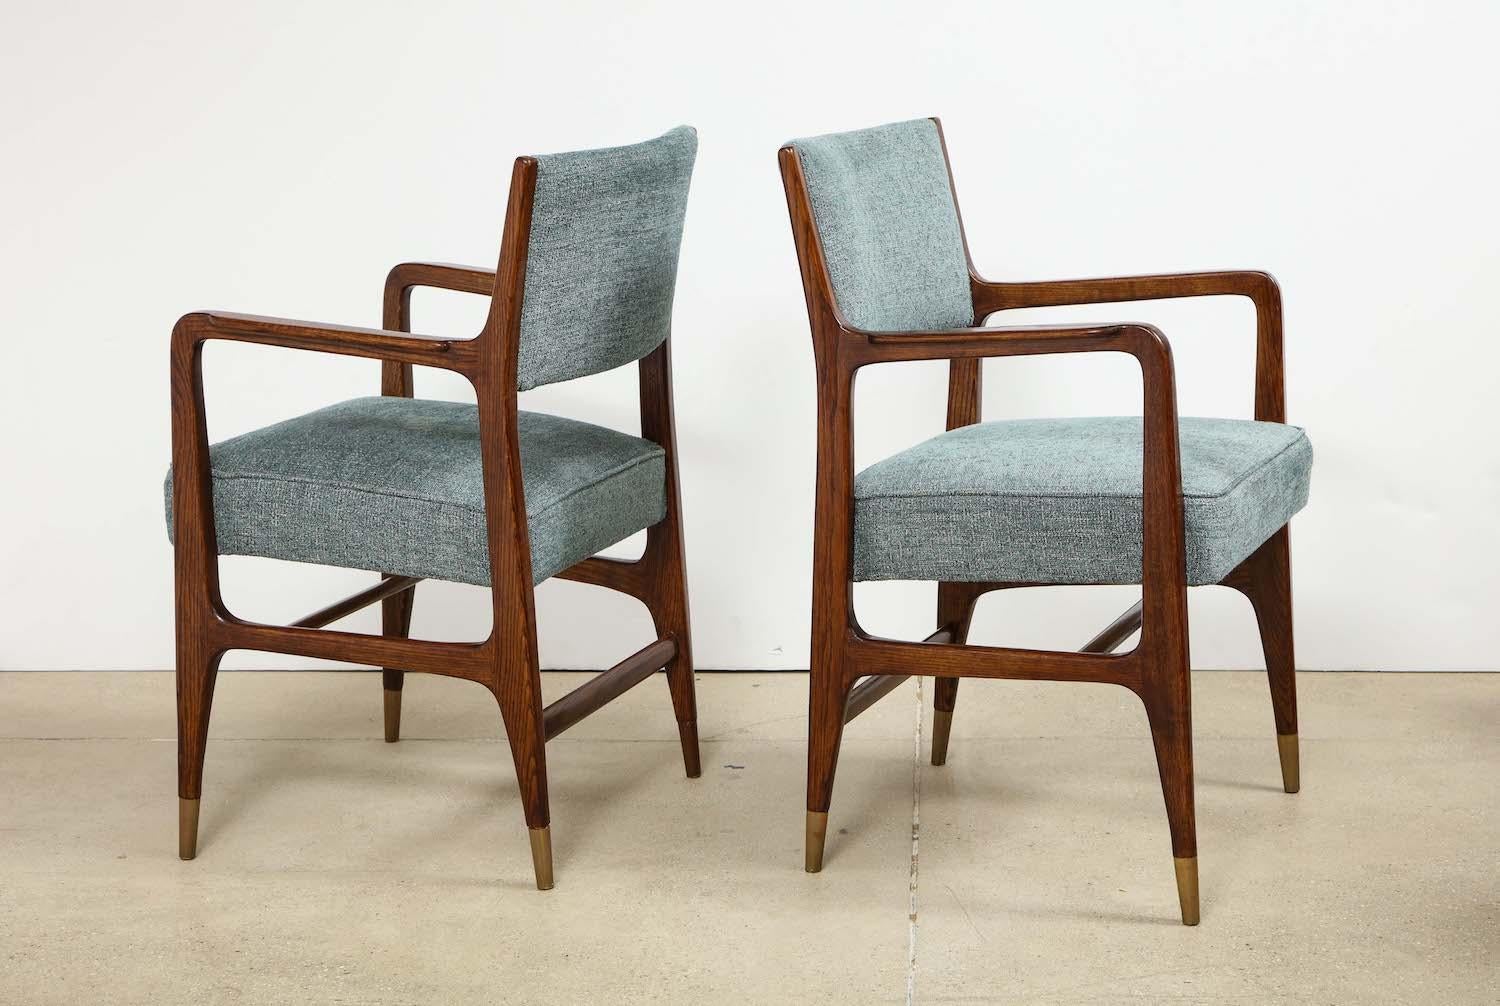 Seltenes Paar Sessel von Gio Ponti. Seltenes Paar Sessel von Gio Ponti. Eine seltene Variante des Modells #110, hergestellt von Cassina. Stühle aus Esche mit offener Maserung, gepolsterter Sitzfläche und Rückenlehne und Messing-Sabots.
  